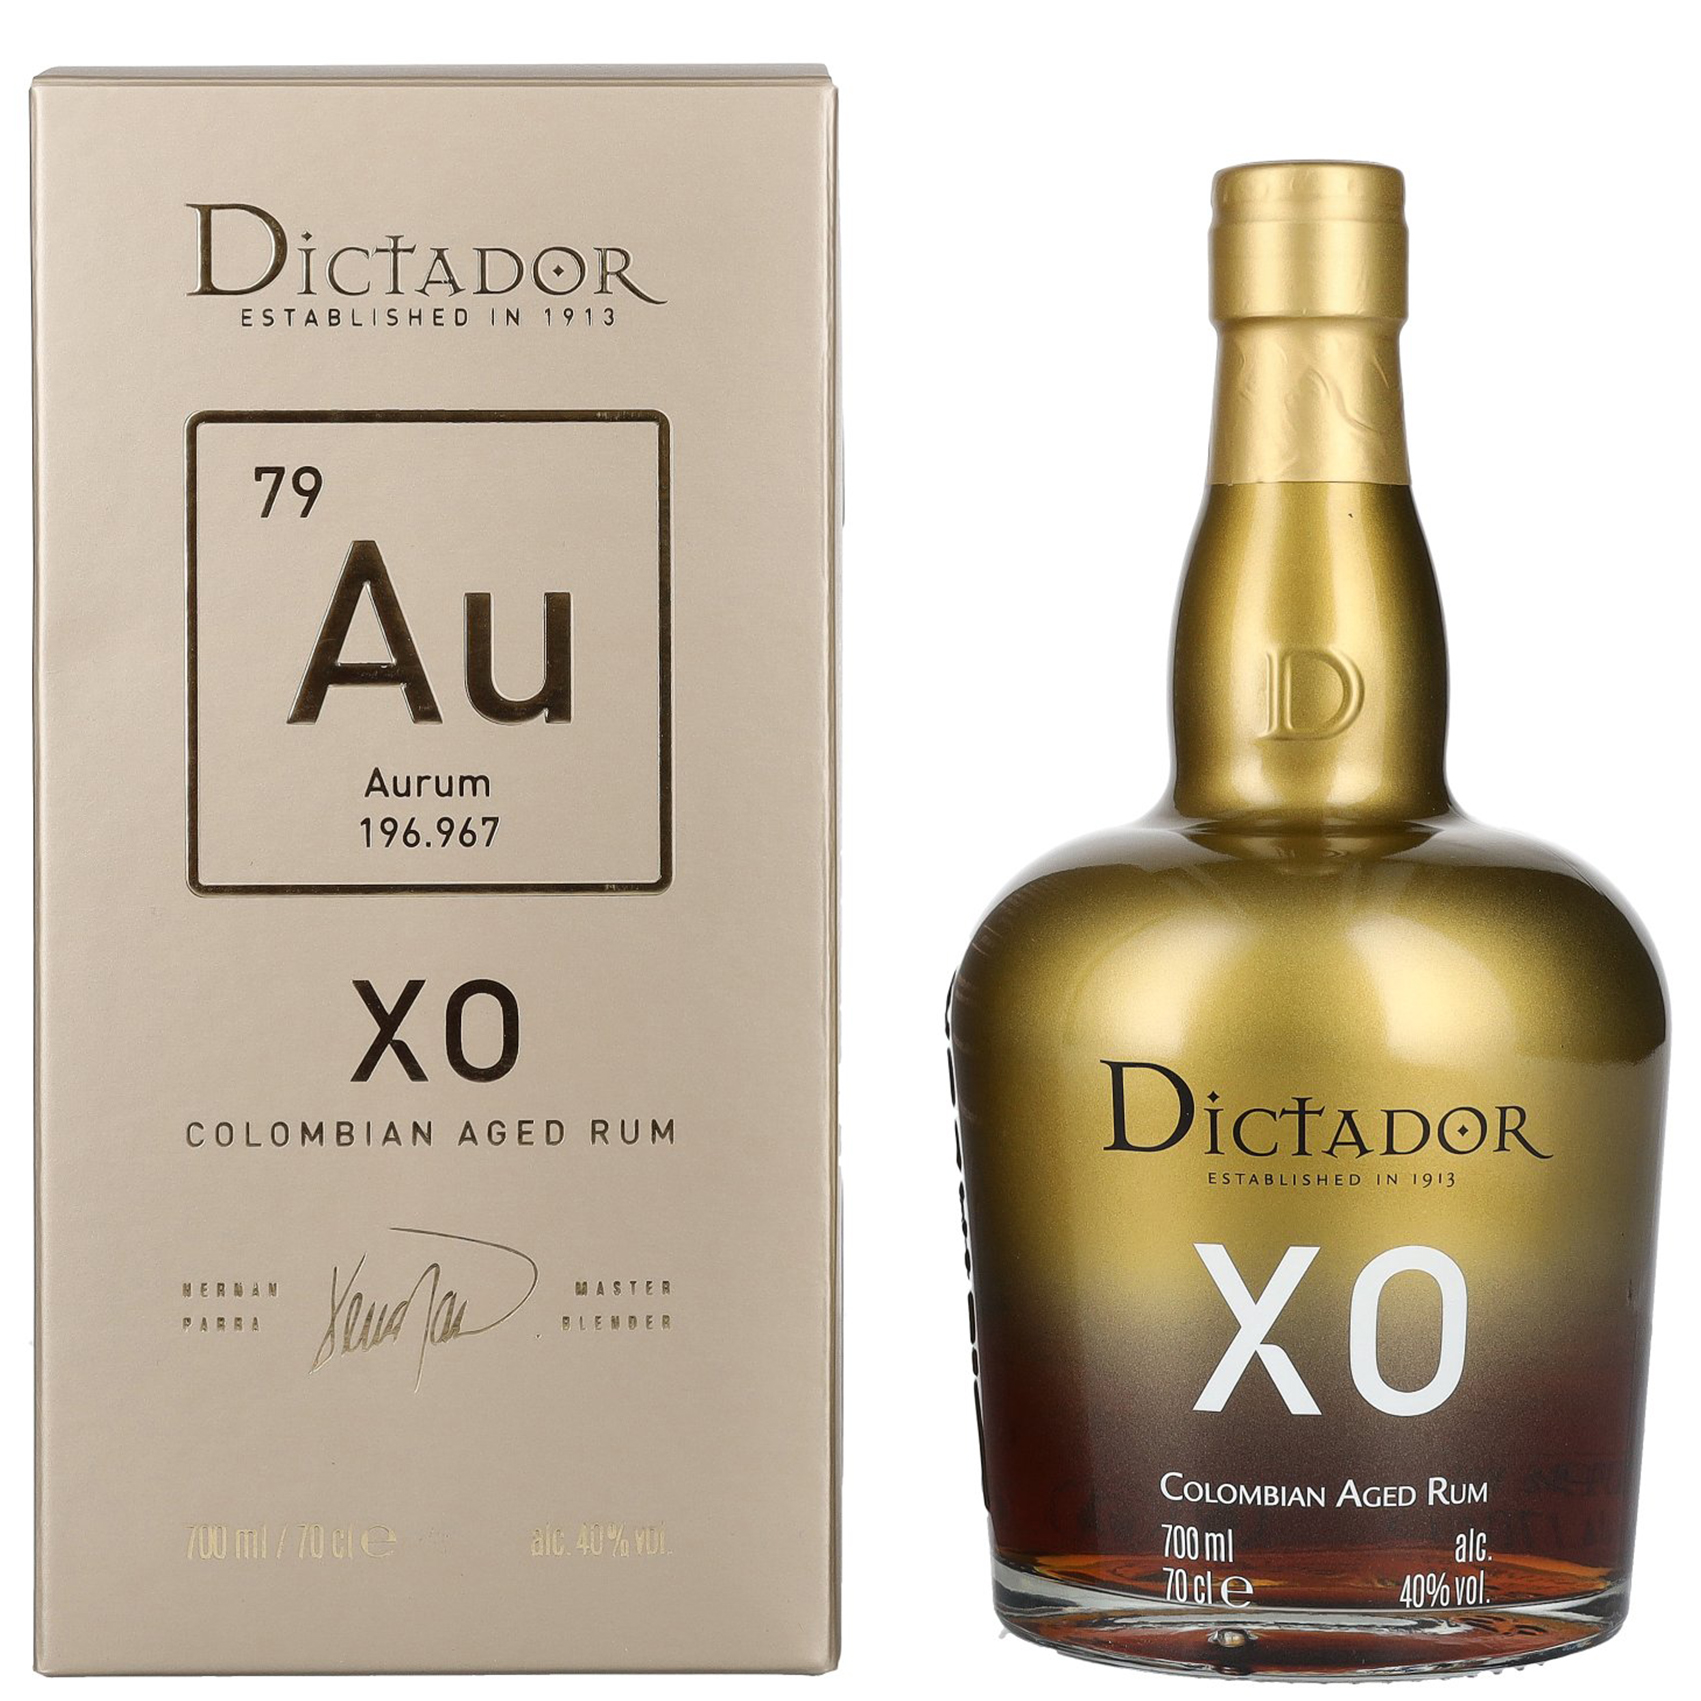 Dictador XO Perpetual Rum 70cl